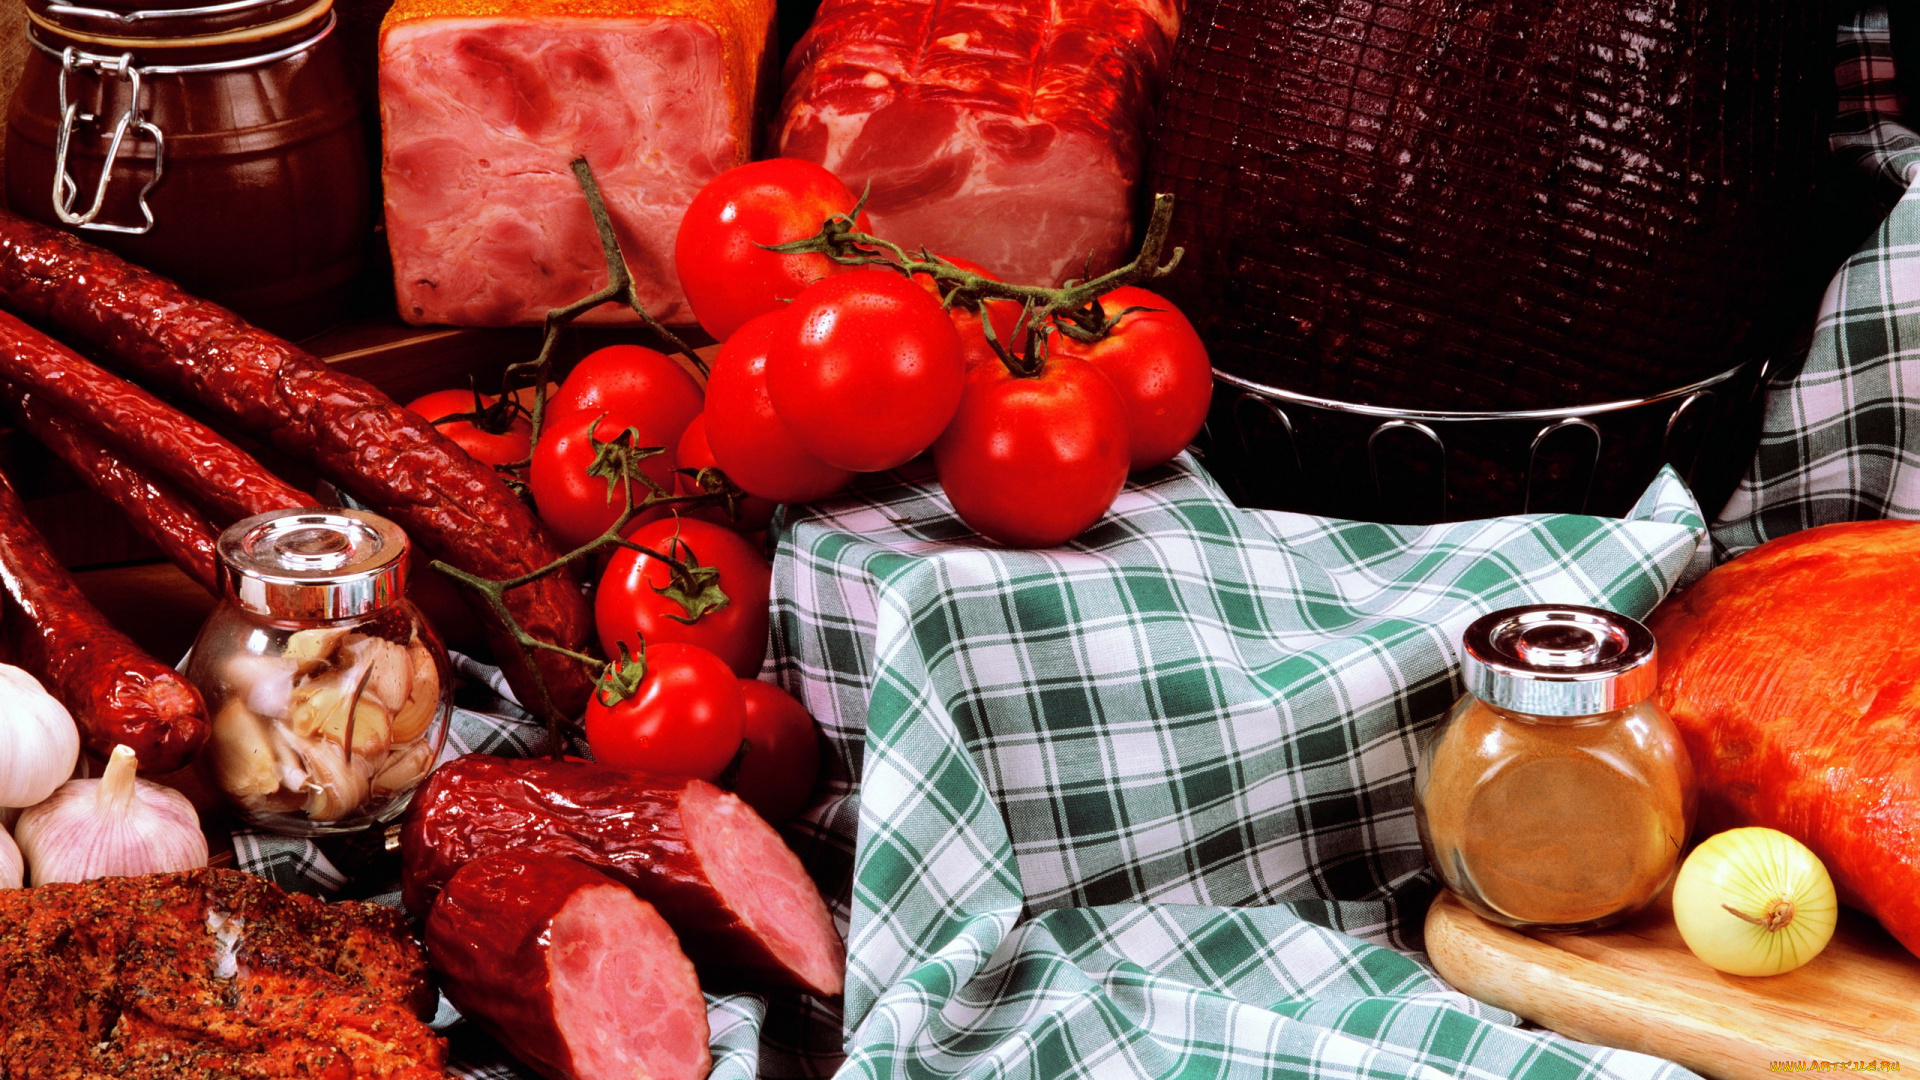 еда, колбасные, изделия, копчености, ветчина, колбаса, томаты, помидоры